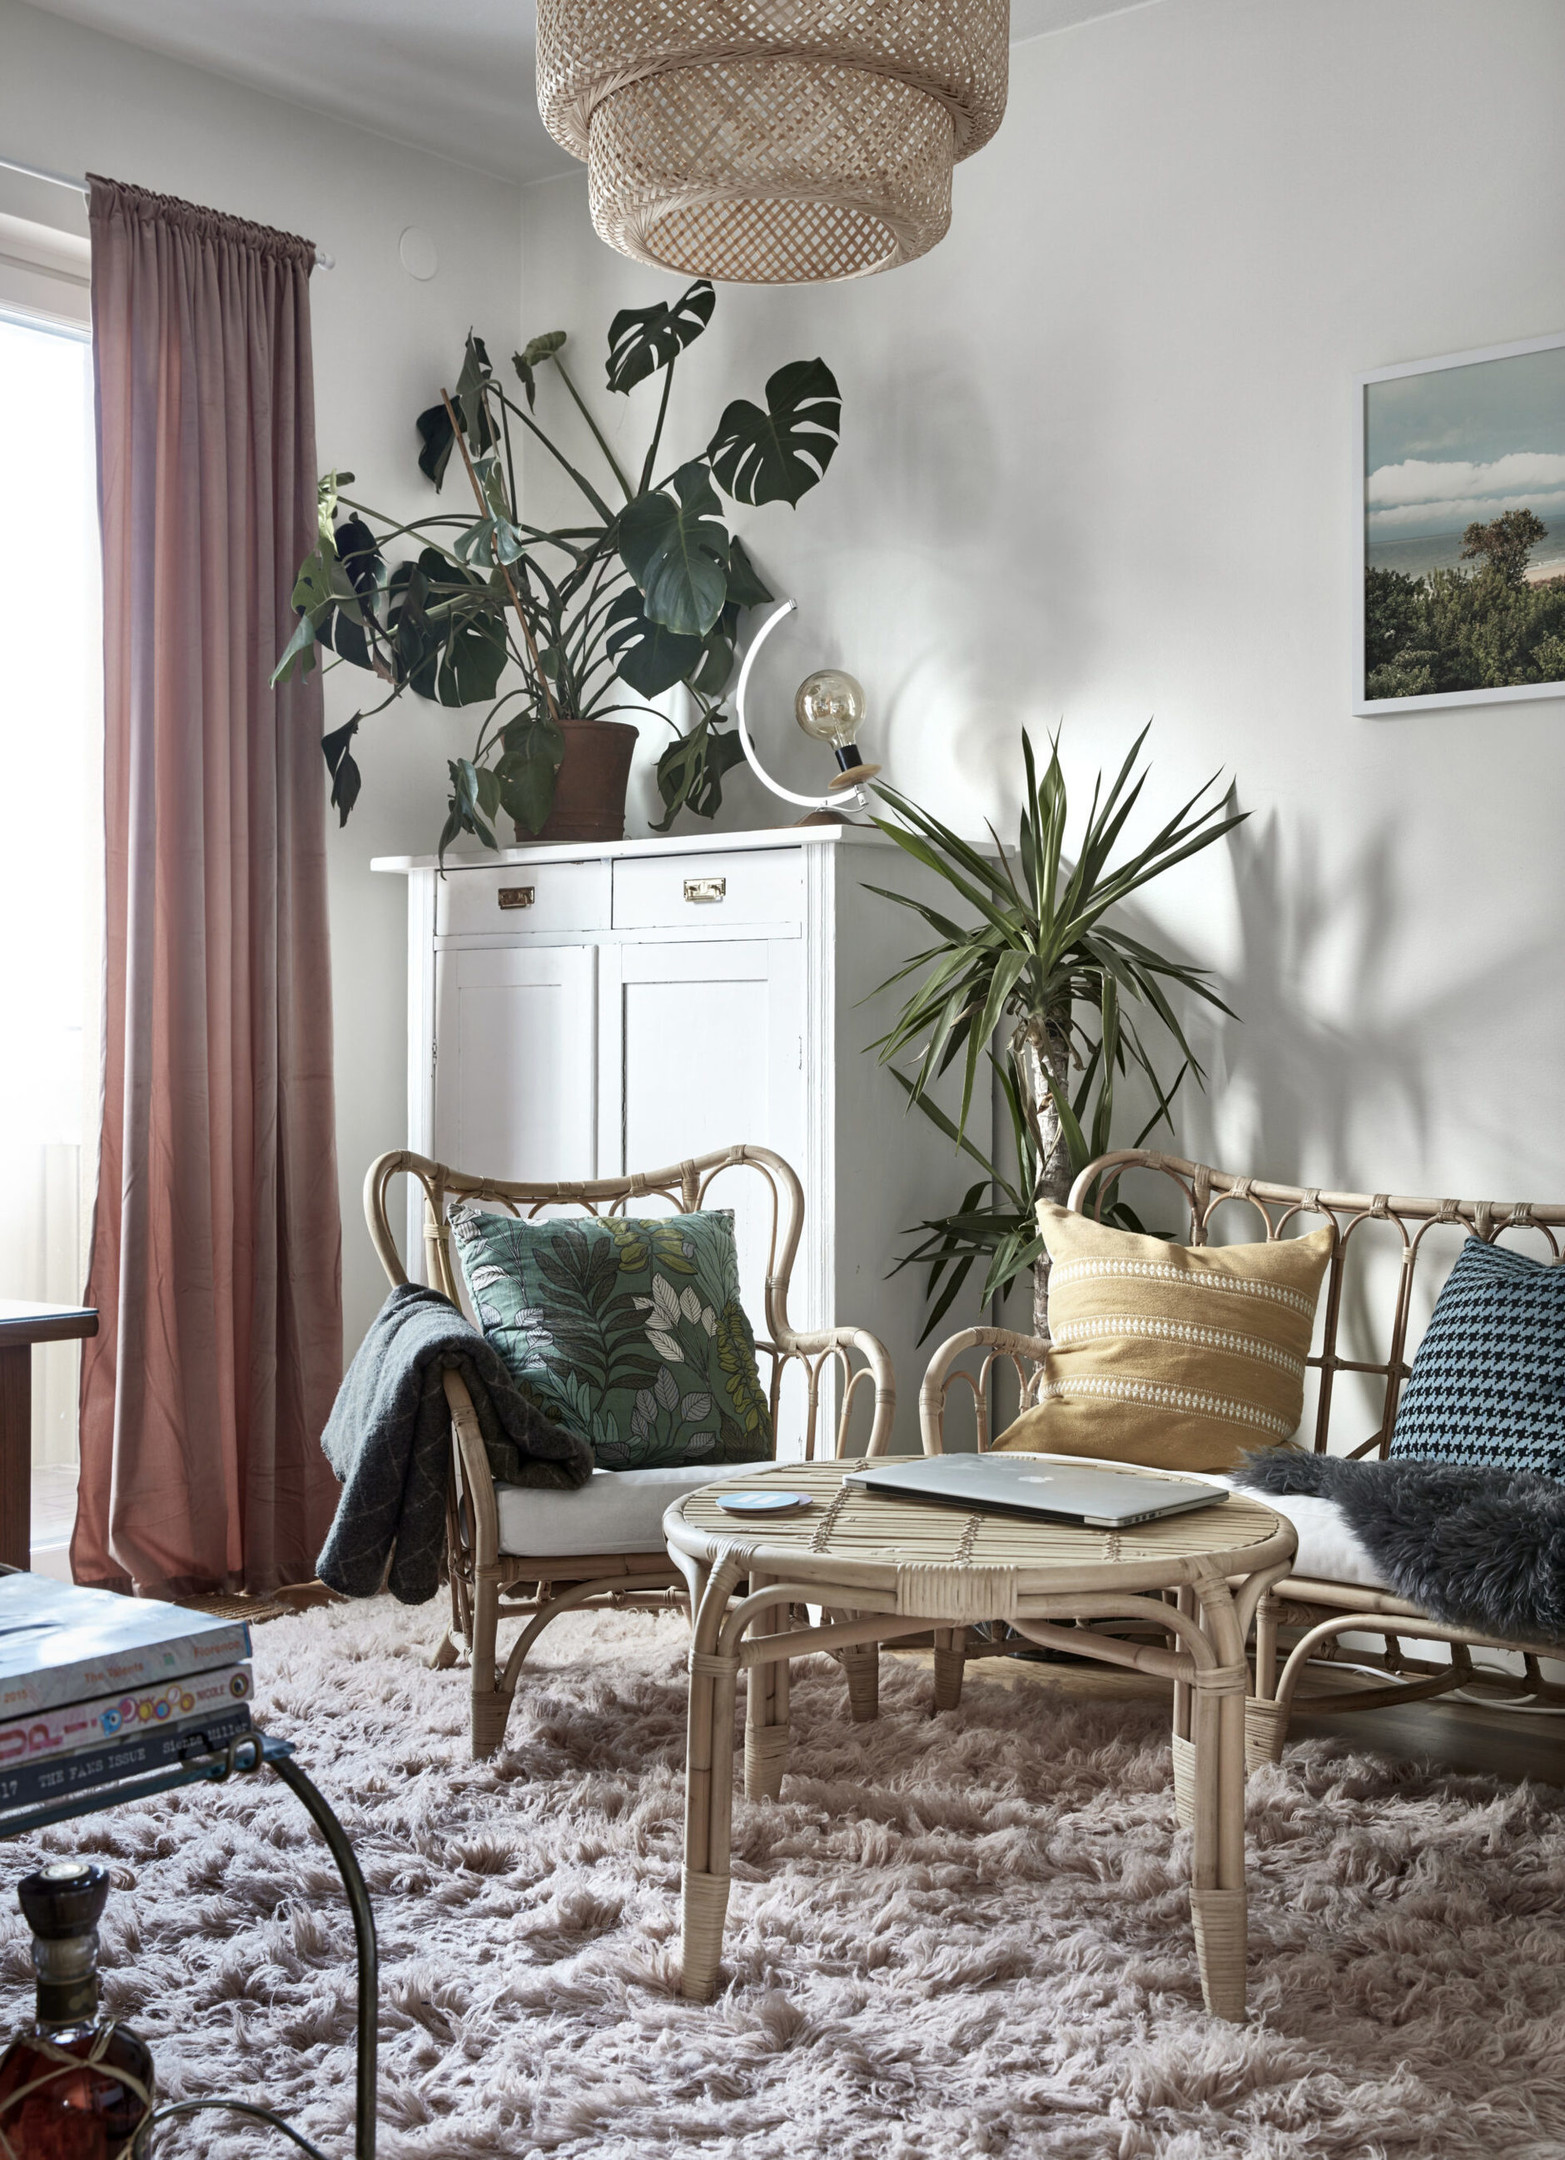 Căn hộ của nhiếp ảnh gia Jimmy Eriksson tại Stockholm (Thụy Điển) với phòng khách sử dụng hầu hết nội thất mây tre đan: Từ ghế sofa, ghế bành, bàn nước,... kết hợp sắc xanh của những chậu cây cảnh cho không gian thêm phần sinh động.